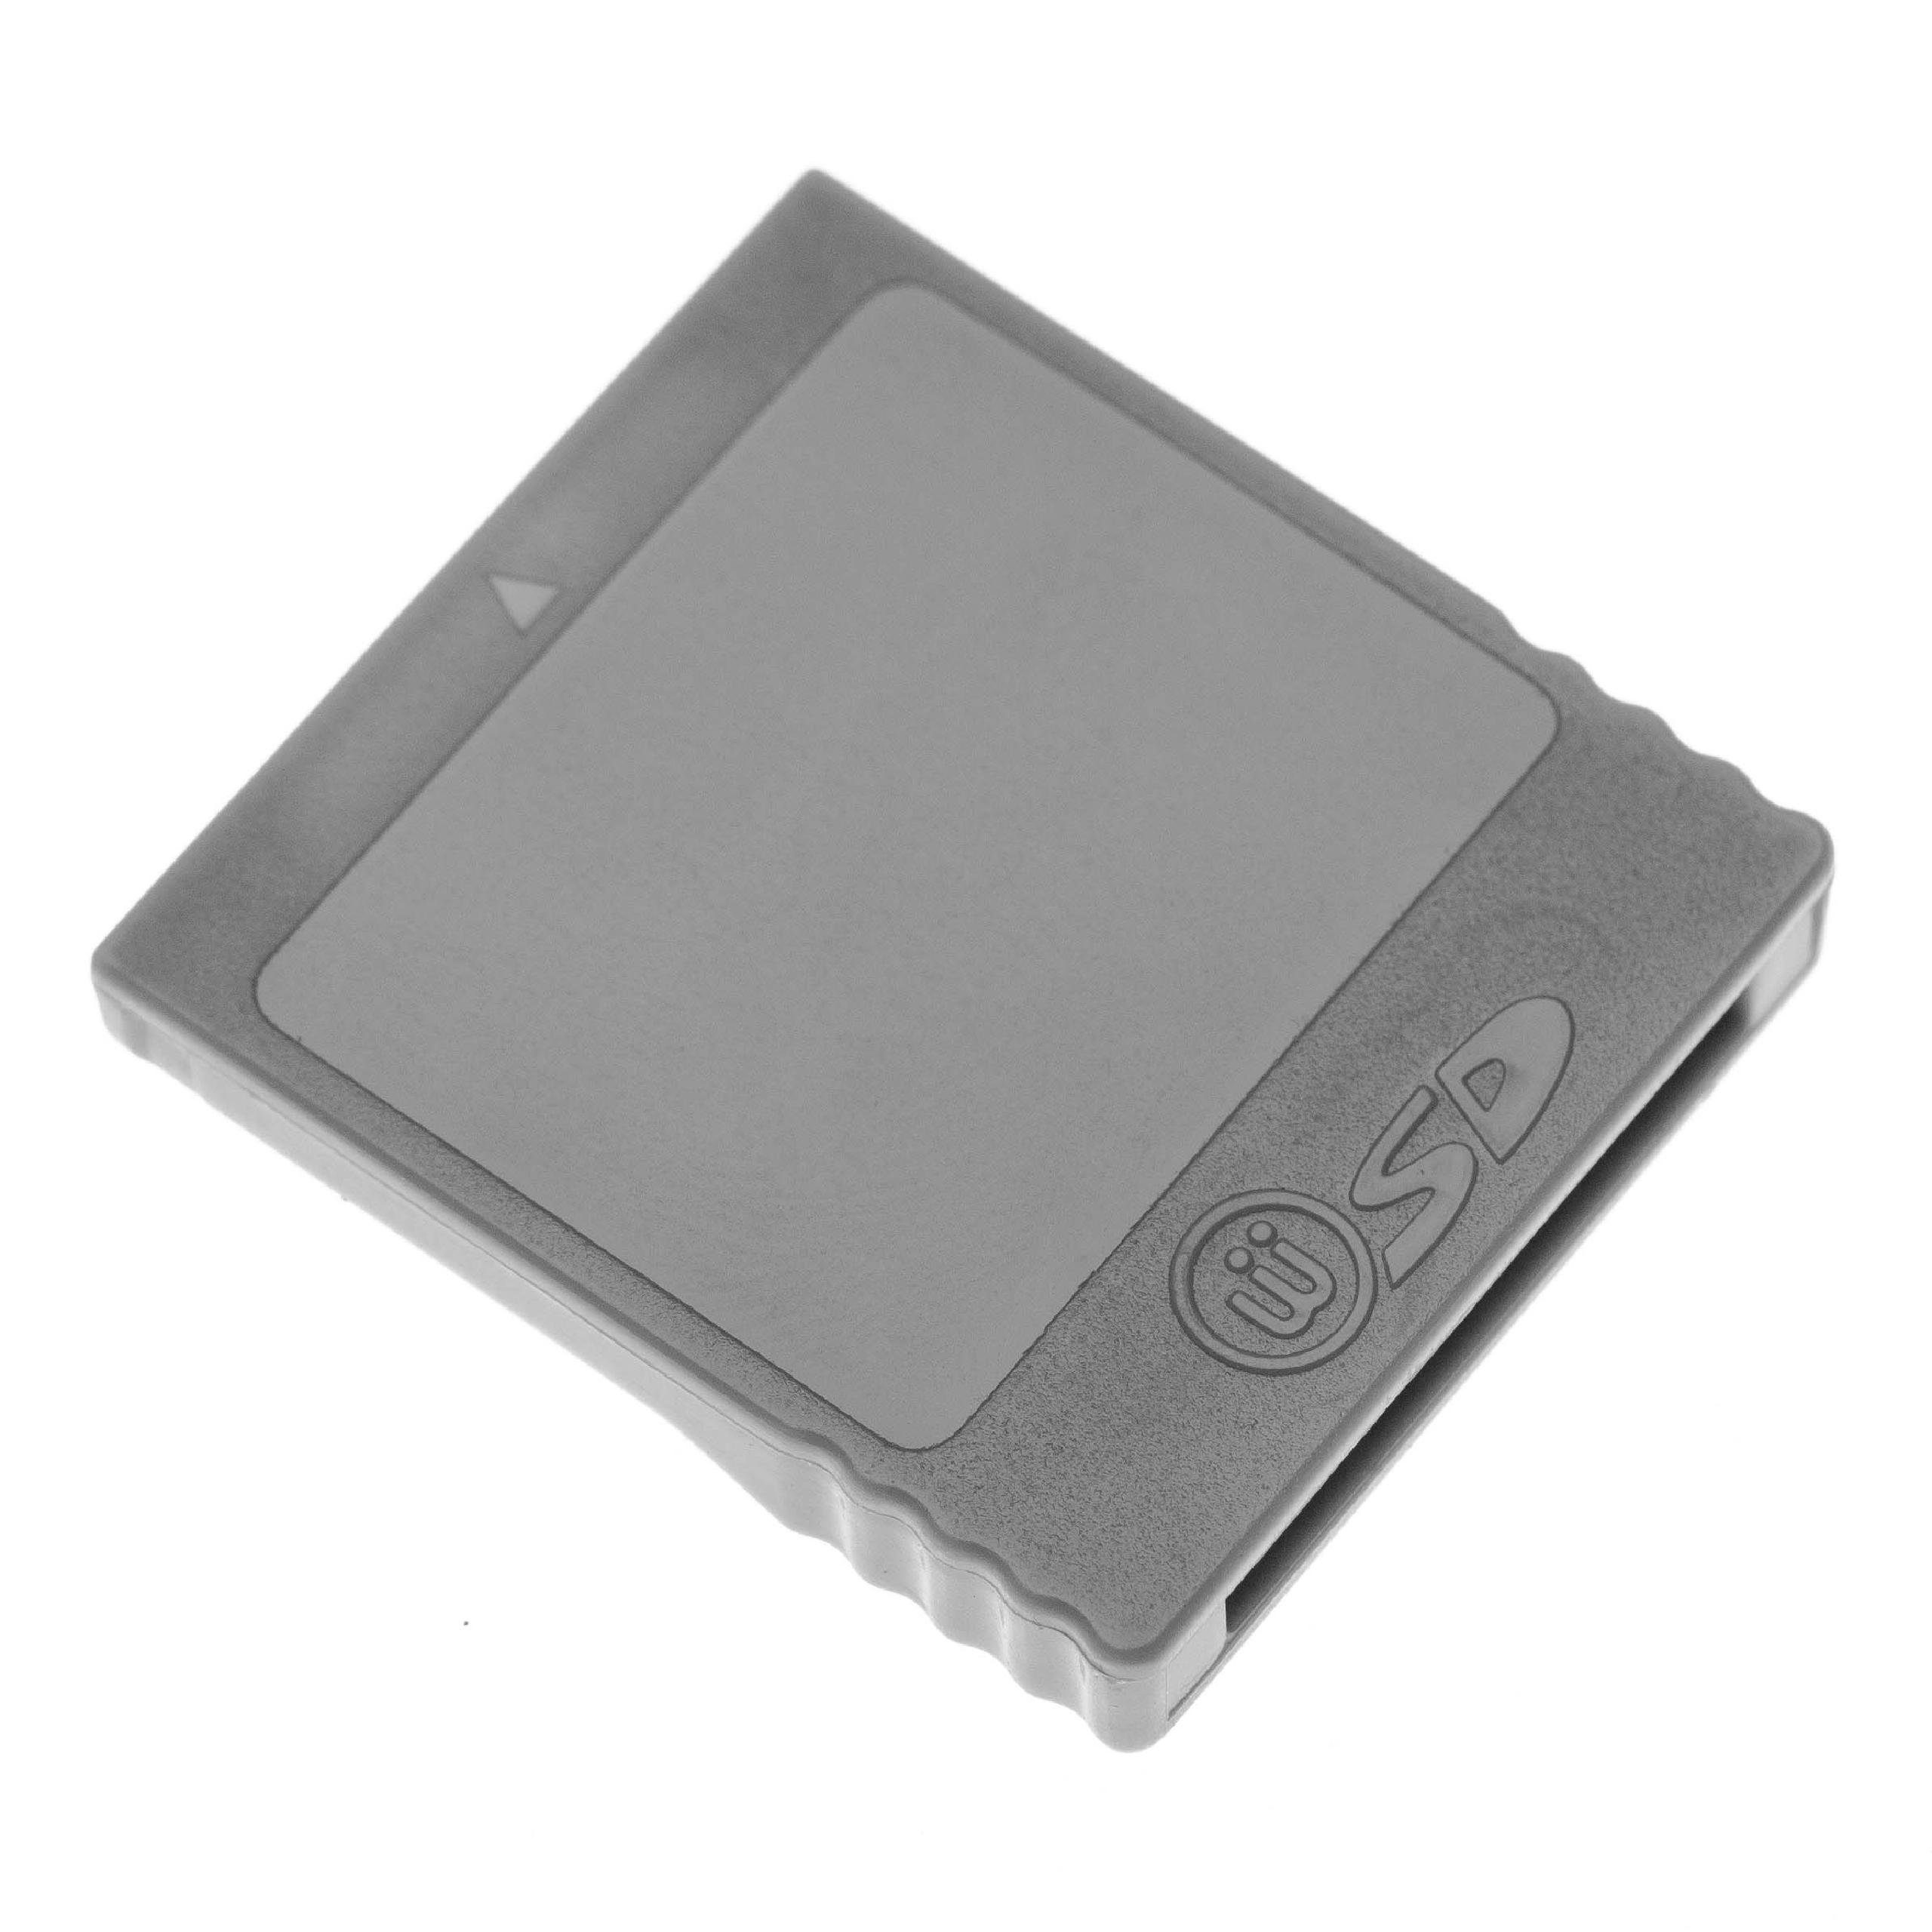 vhbw »passend für Nintendo GameCube, Wii Spielekonsole« Gaming-Adapter,  passend für Nintendo GameCube, Wii Spielekonsole